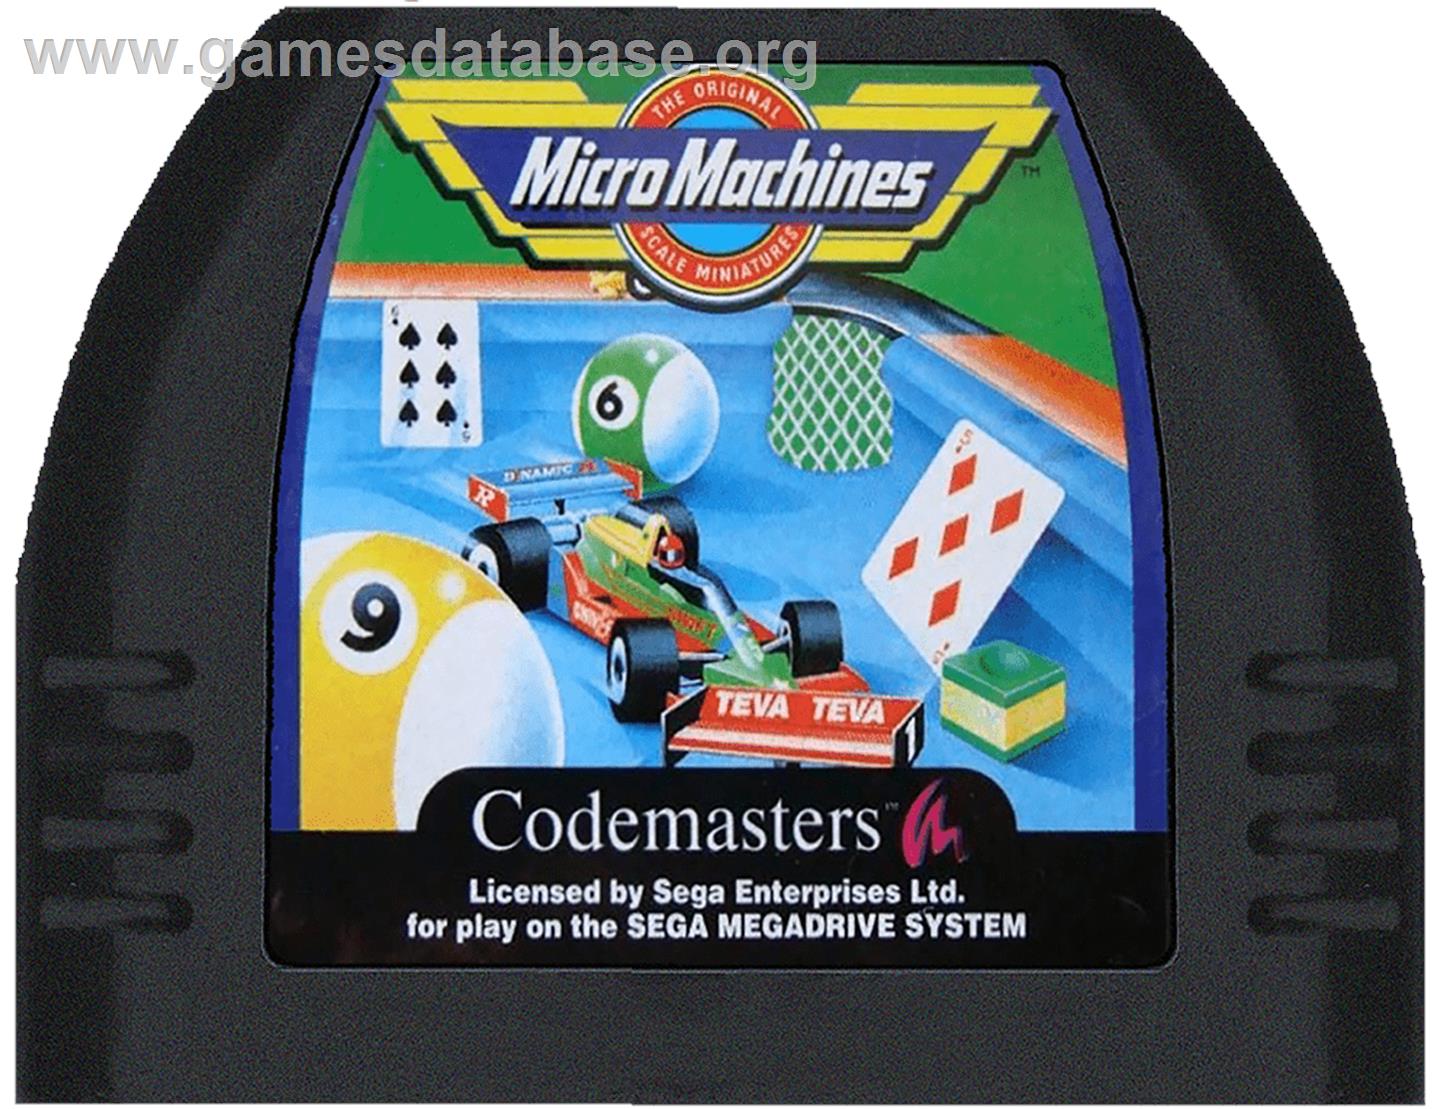 Micro Machines - Sega Genesis - Artwork - Cartridge